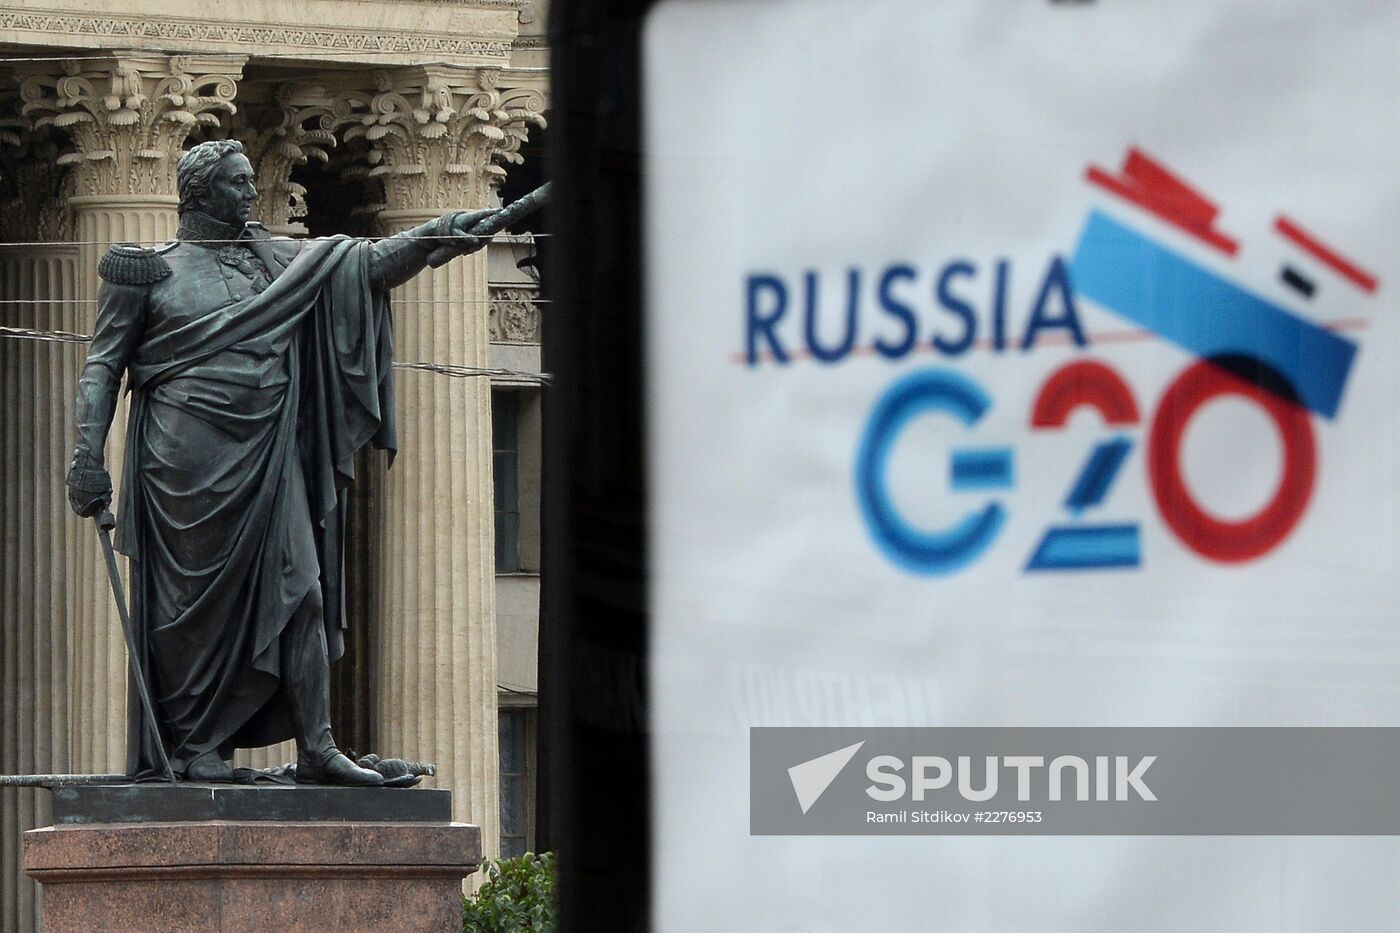 St. Petersburg ahead of G20 Summit